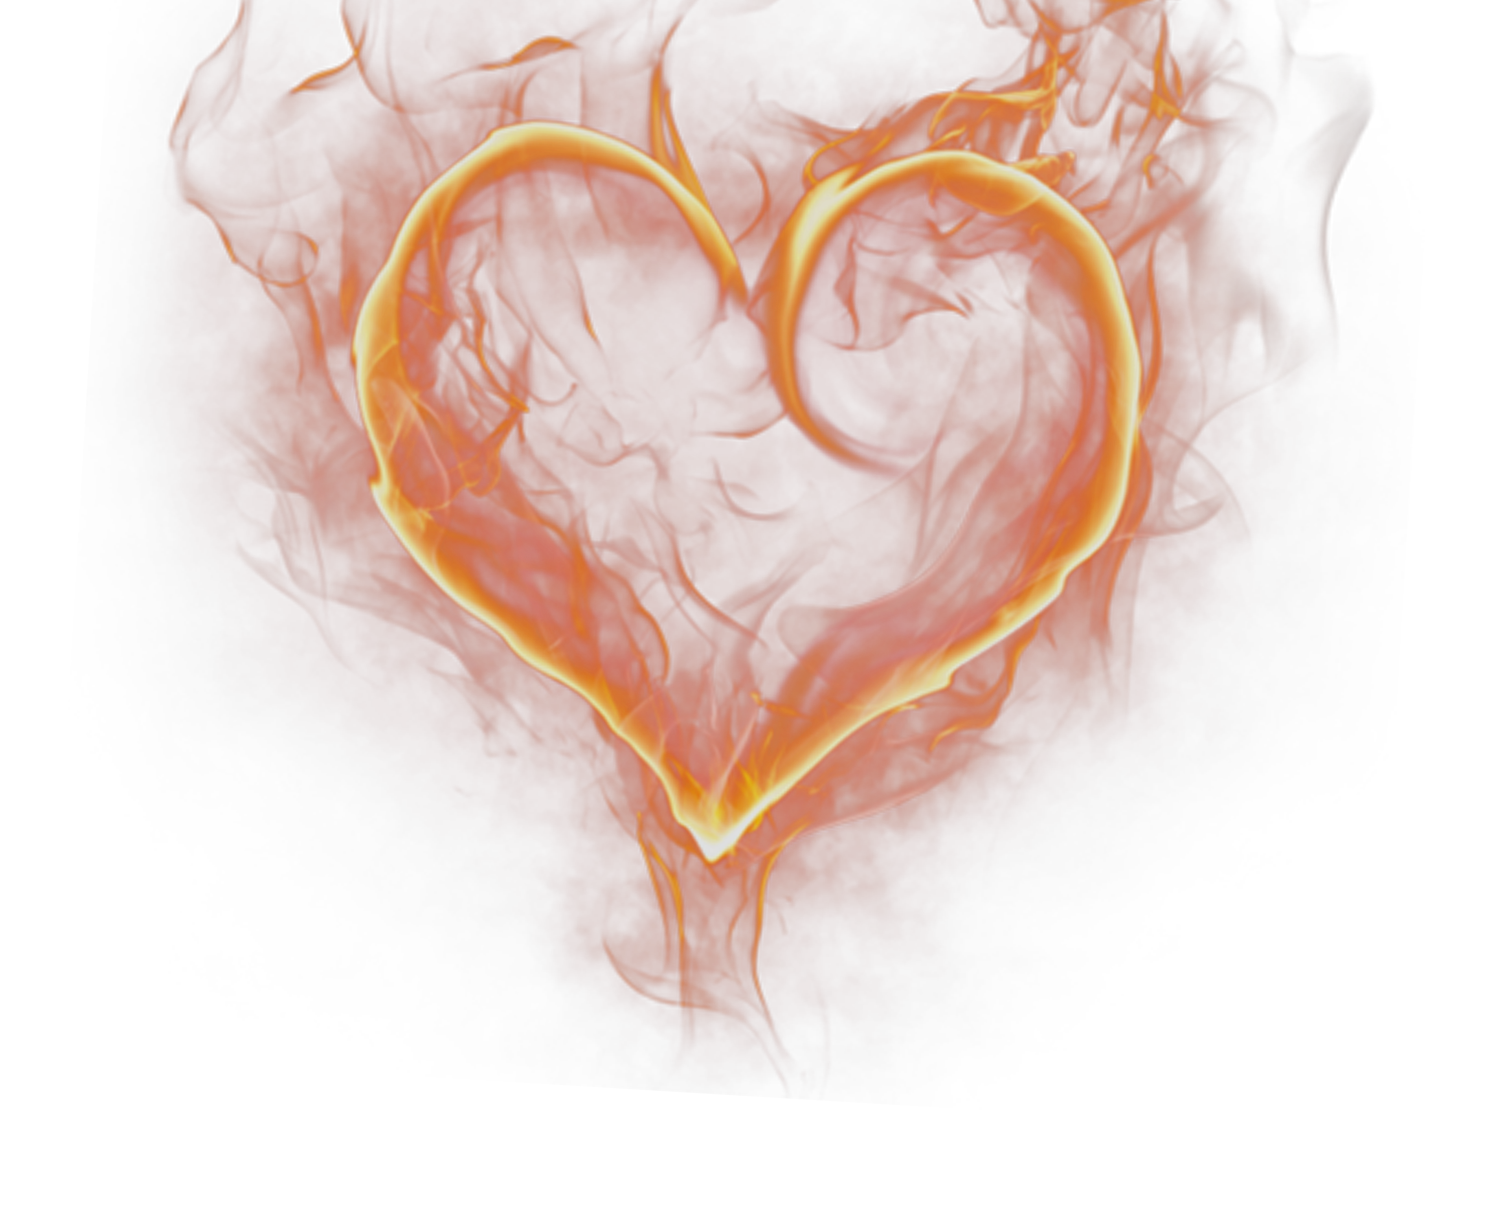 Hình nền trái tim lửa là một trong những thiết kế độc đáo để làm nổi bật một bức ảnh. Sự kết hợp giữa hình trái tim với họa tiết ngọn lửa tạo ra một hiệu ứng mạnh mẽ, cuốn hút cho những ai thích sự đậm chất nghệ thuật. Hãy xem ngay hình ảnh liên quan để tìm hiểu thêm về cách tạo ra hình nền trái tim lửa cho ảnh của bạn.